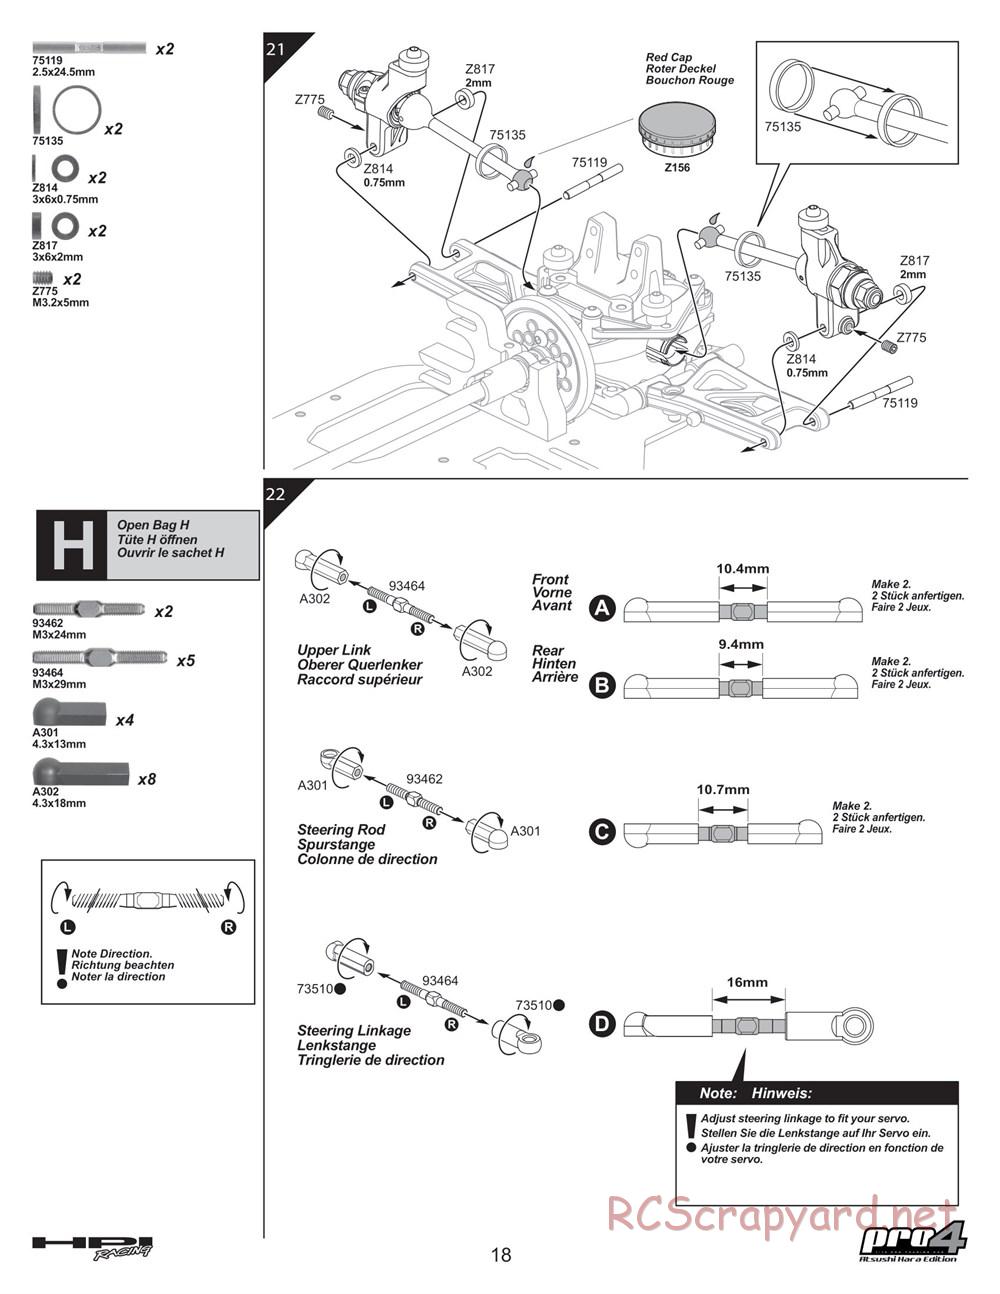 HPI - Pro4 Hara Edition - Manual - Page 18